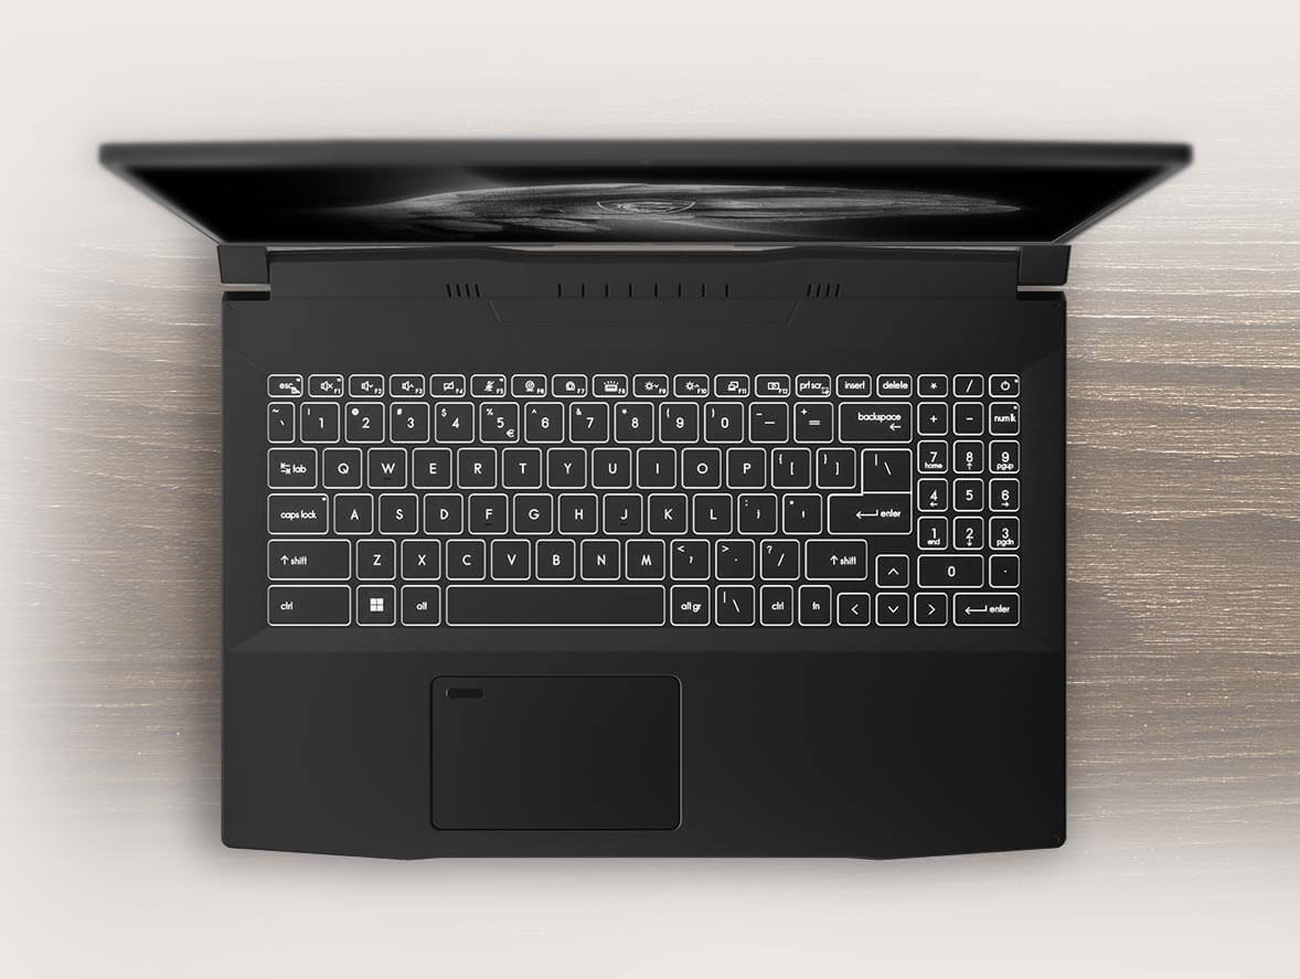 MSI Laptop-Creator